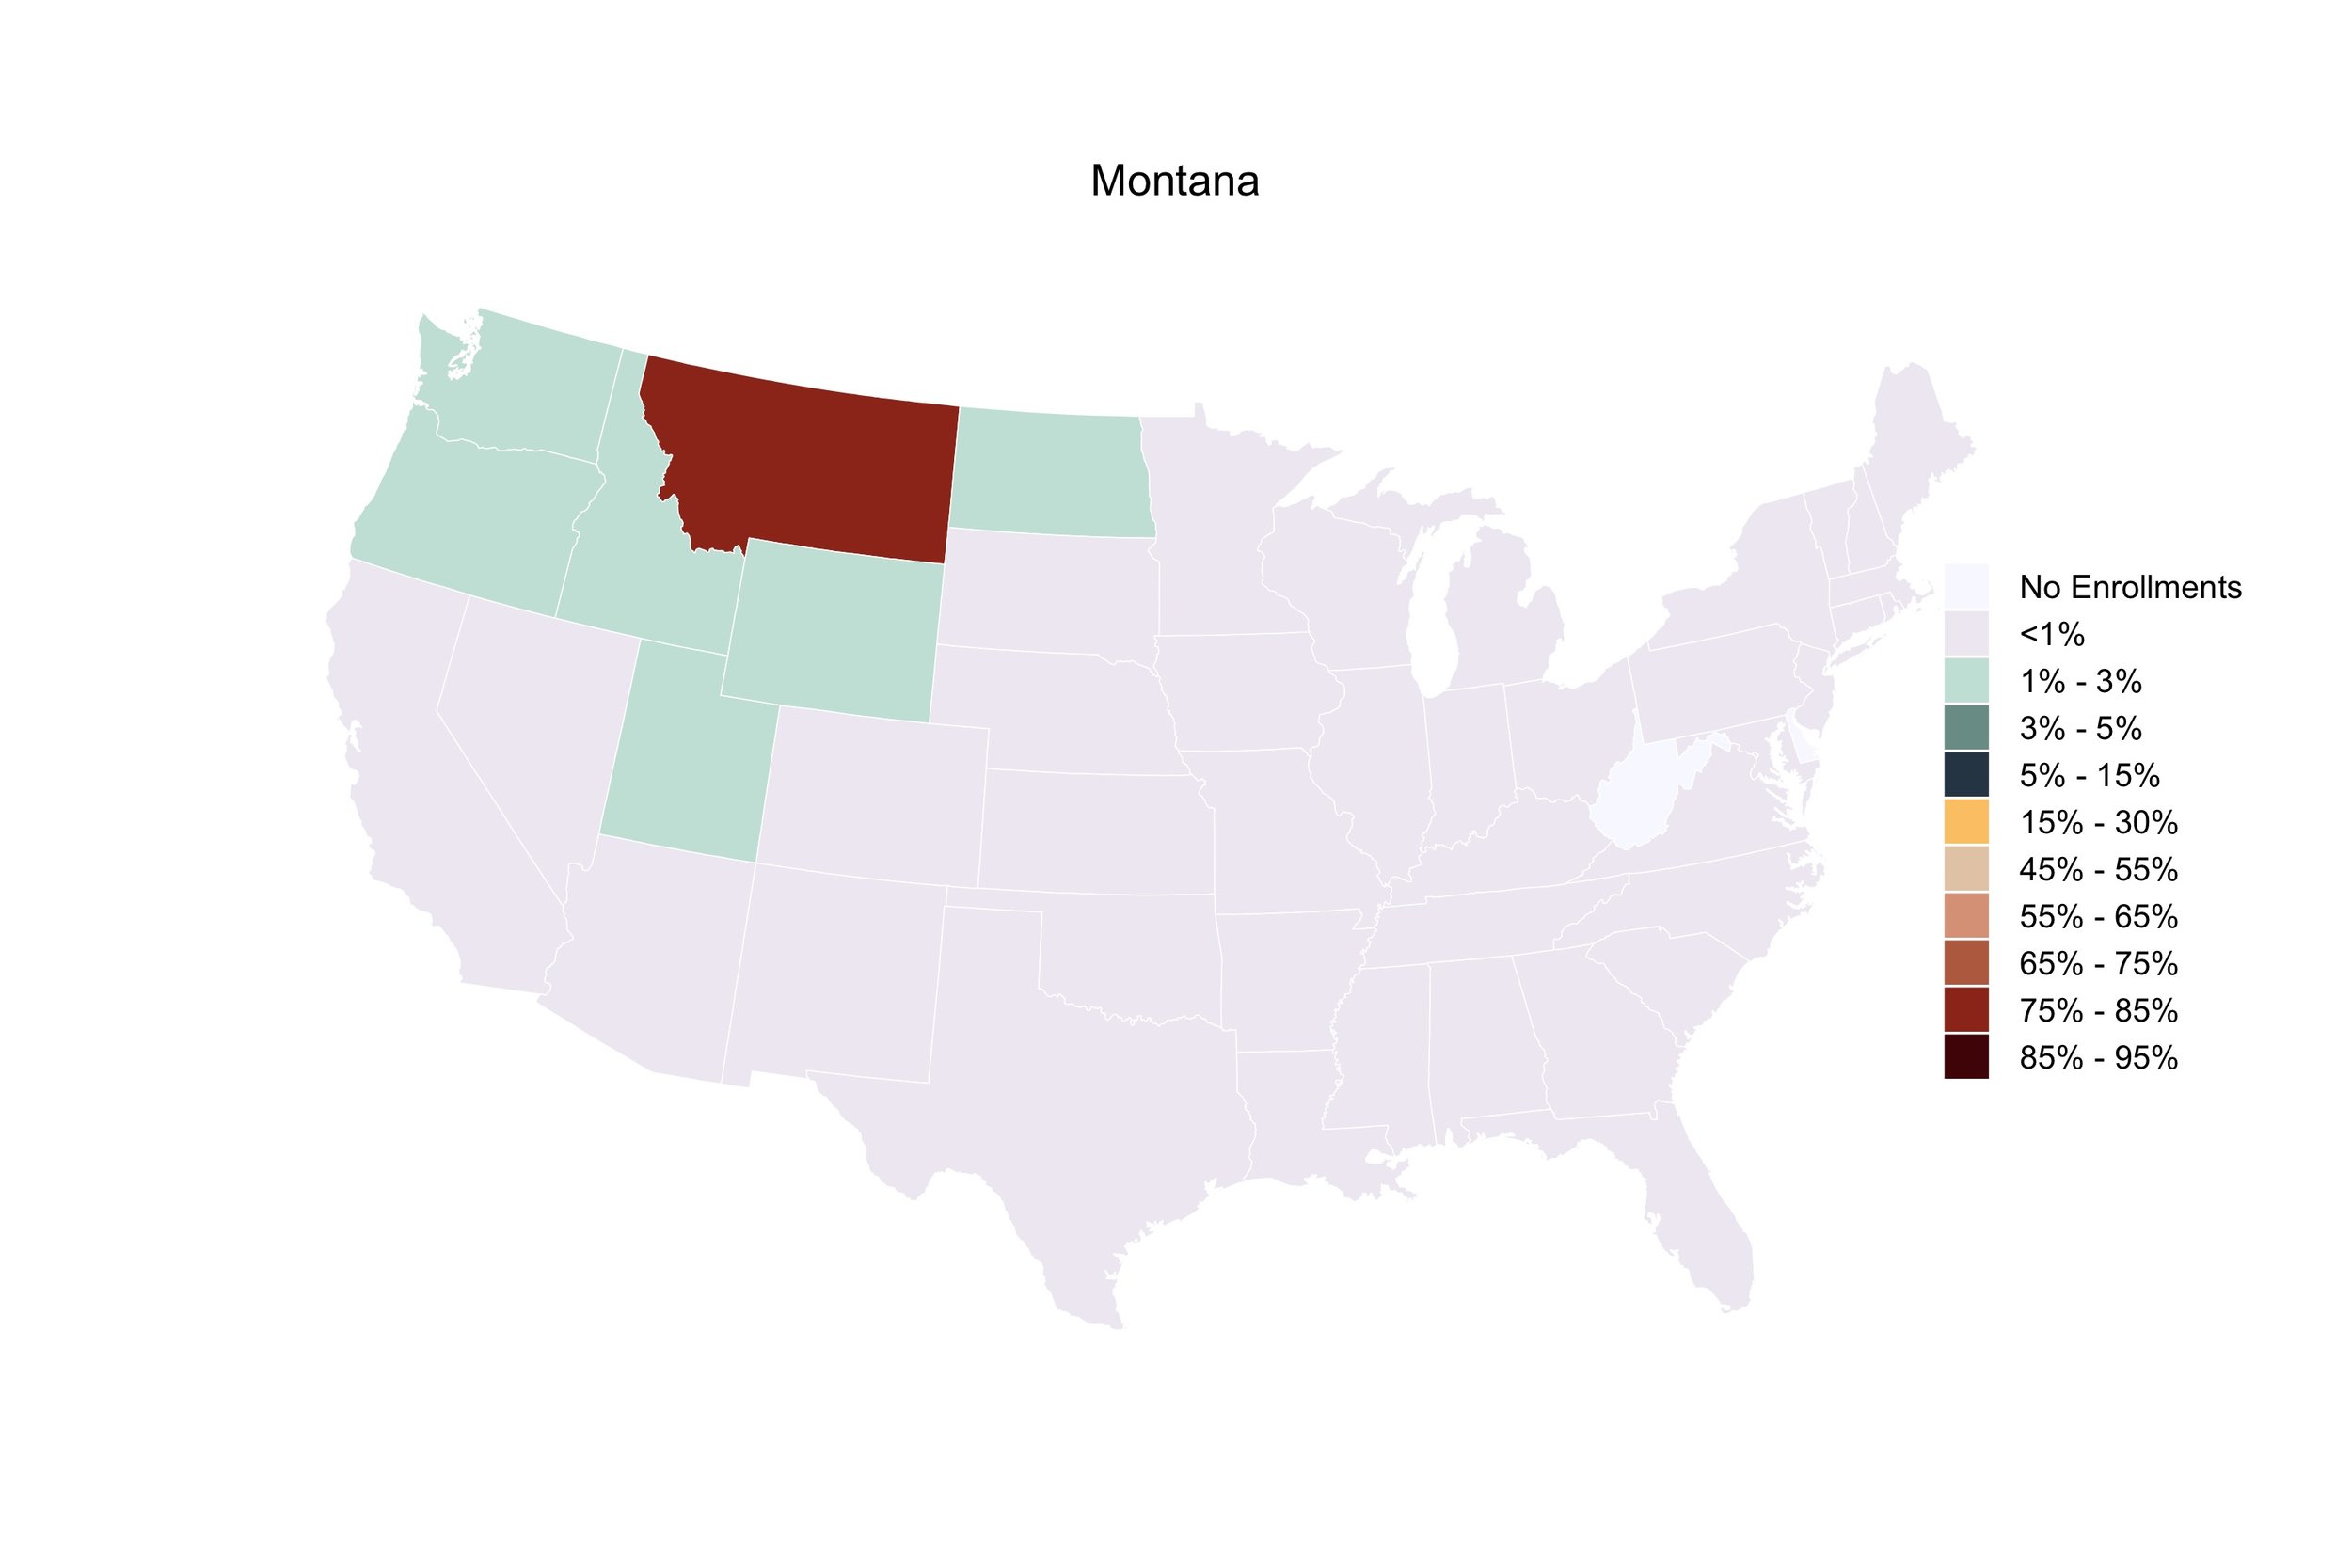 Montana.jpg